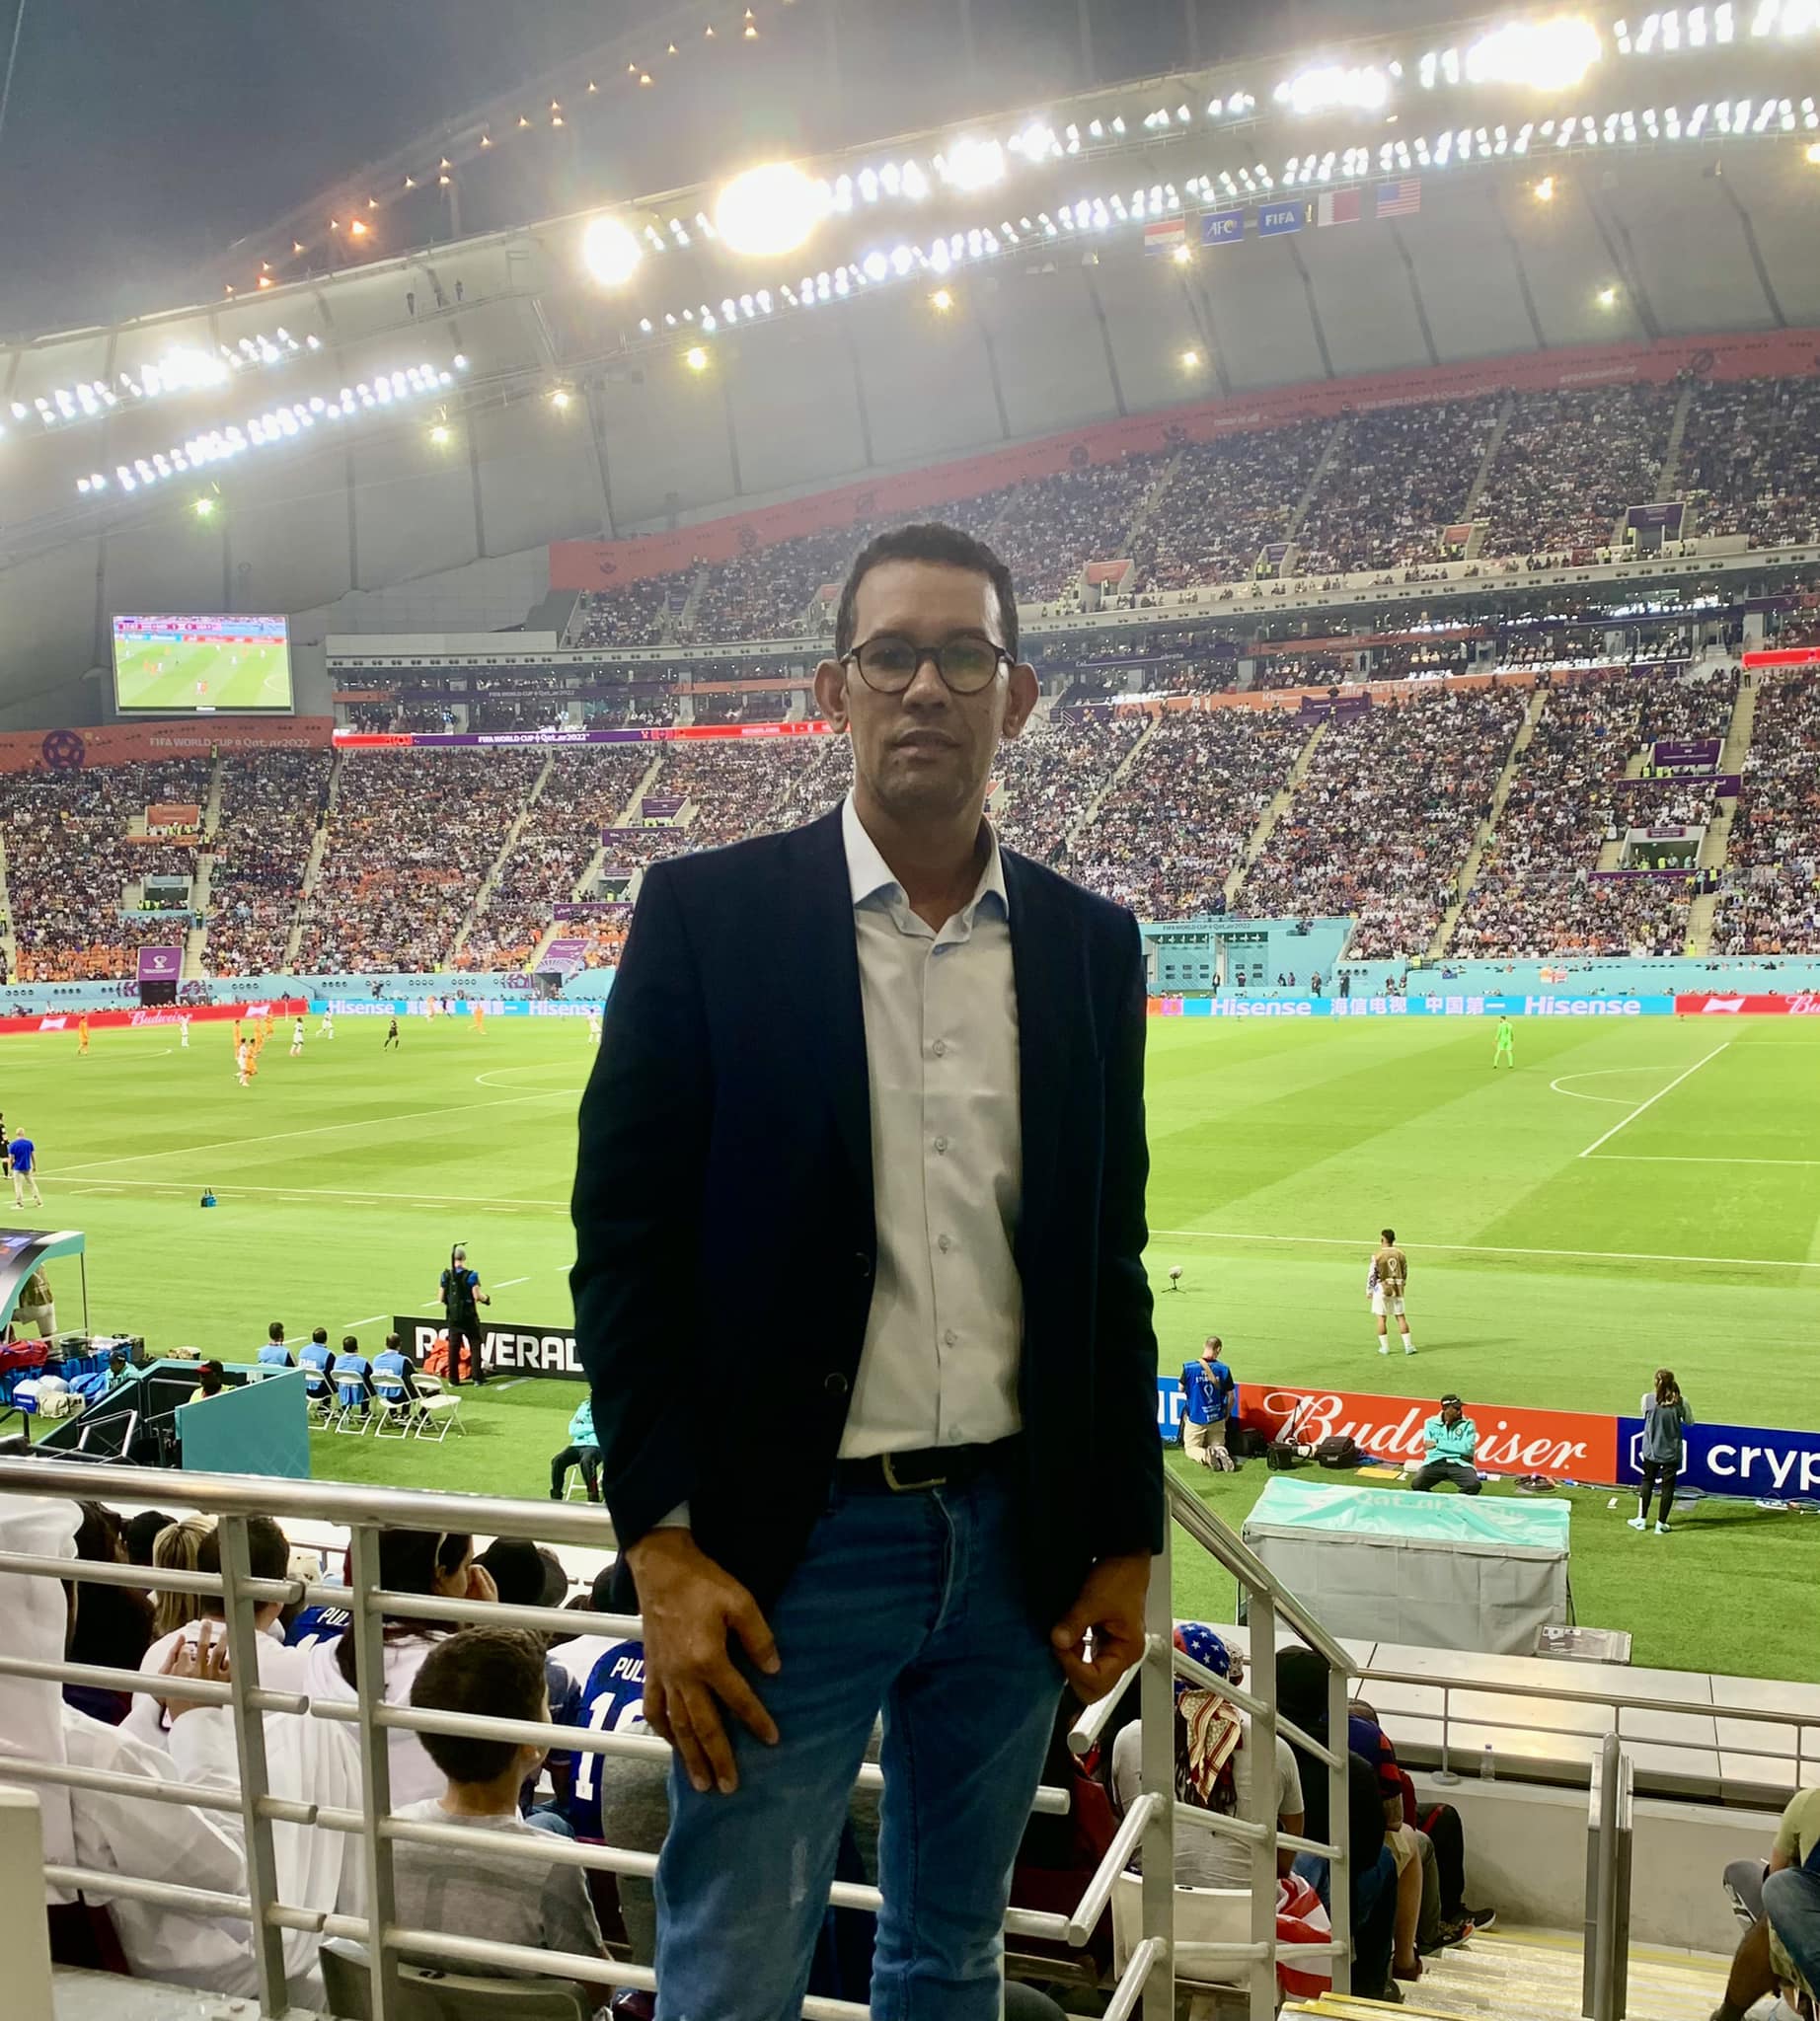  الإعلامي الرياضي، ومسؤول الإعلام في الاتحادية الموريتانية لكرة القدم محمد ولد اندح في أحد ملاعب كأس العالم في قطر